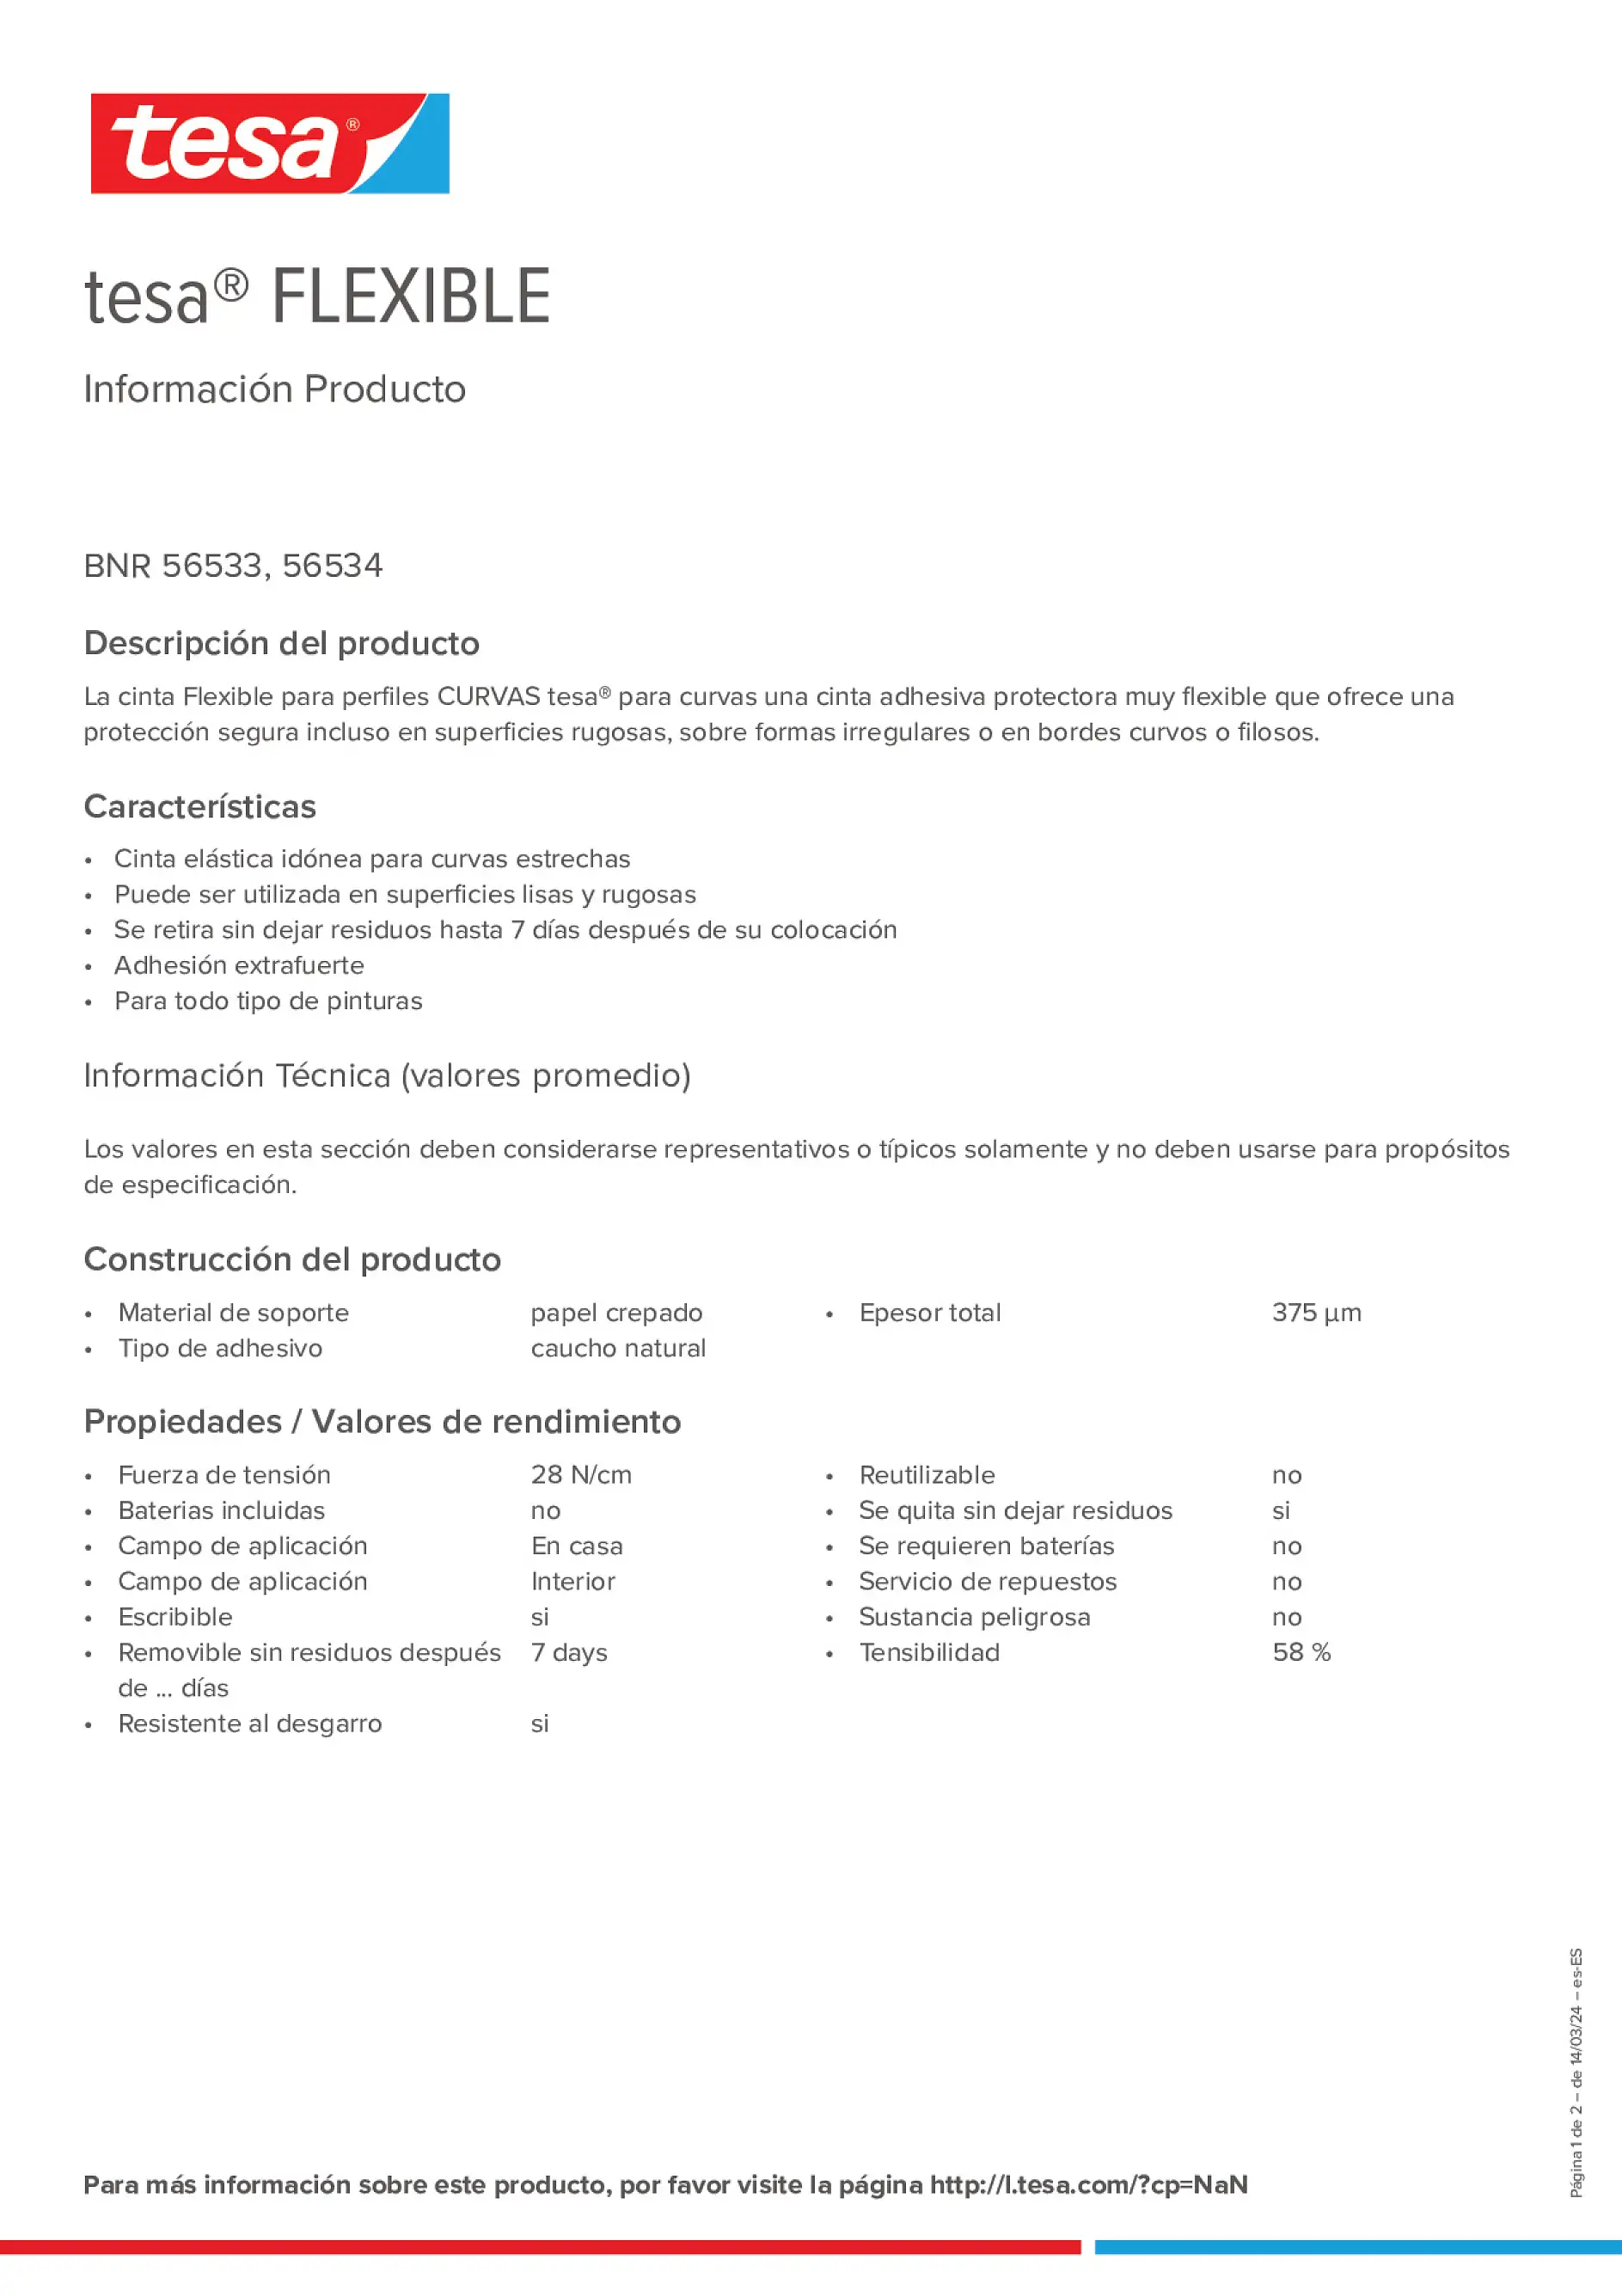 Product information_tesa® 56360_es-ES